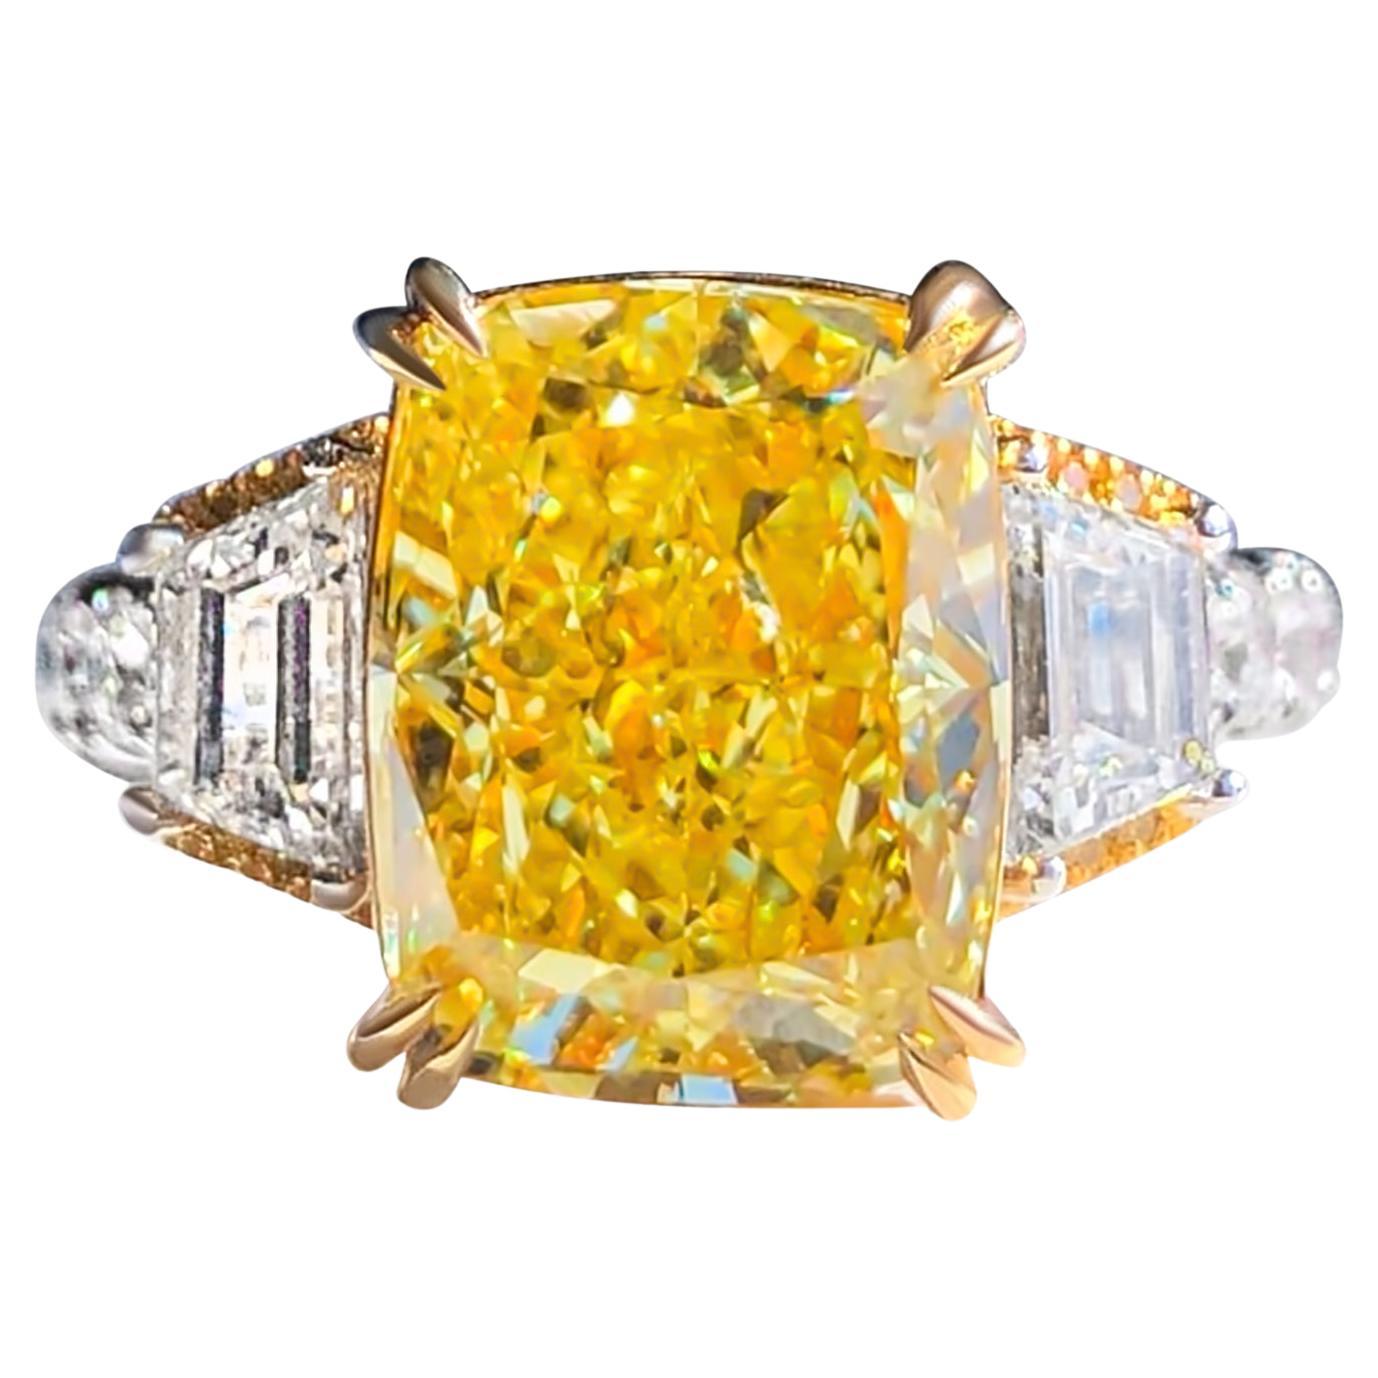 GIA Certified 5.01 Carat Yellow Cushion Diamond Engagement Ring